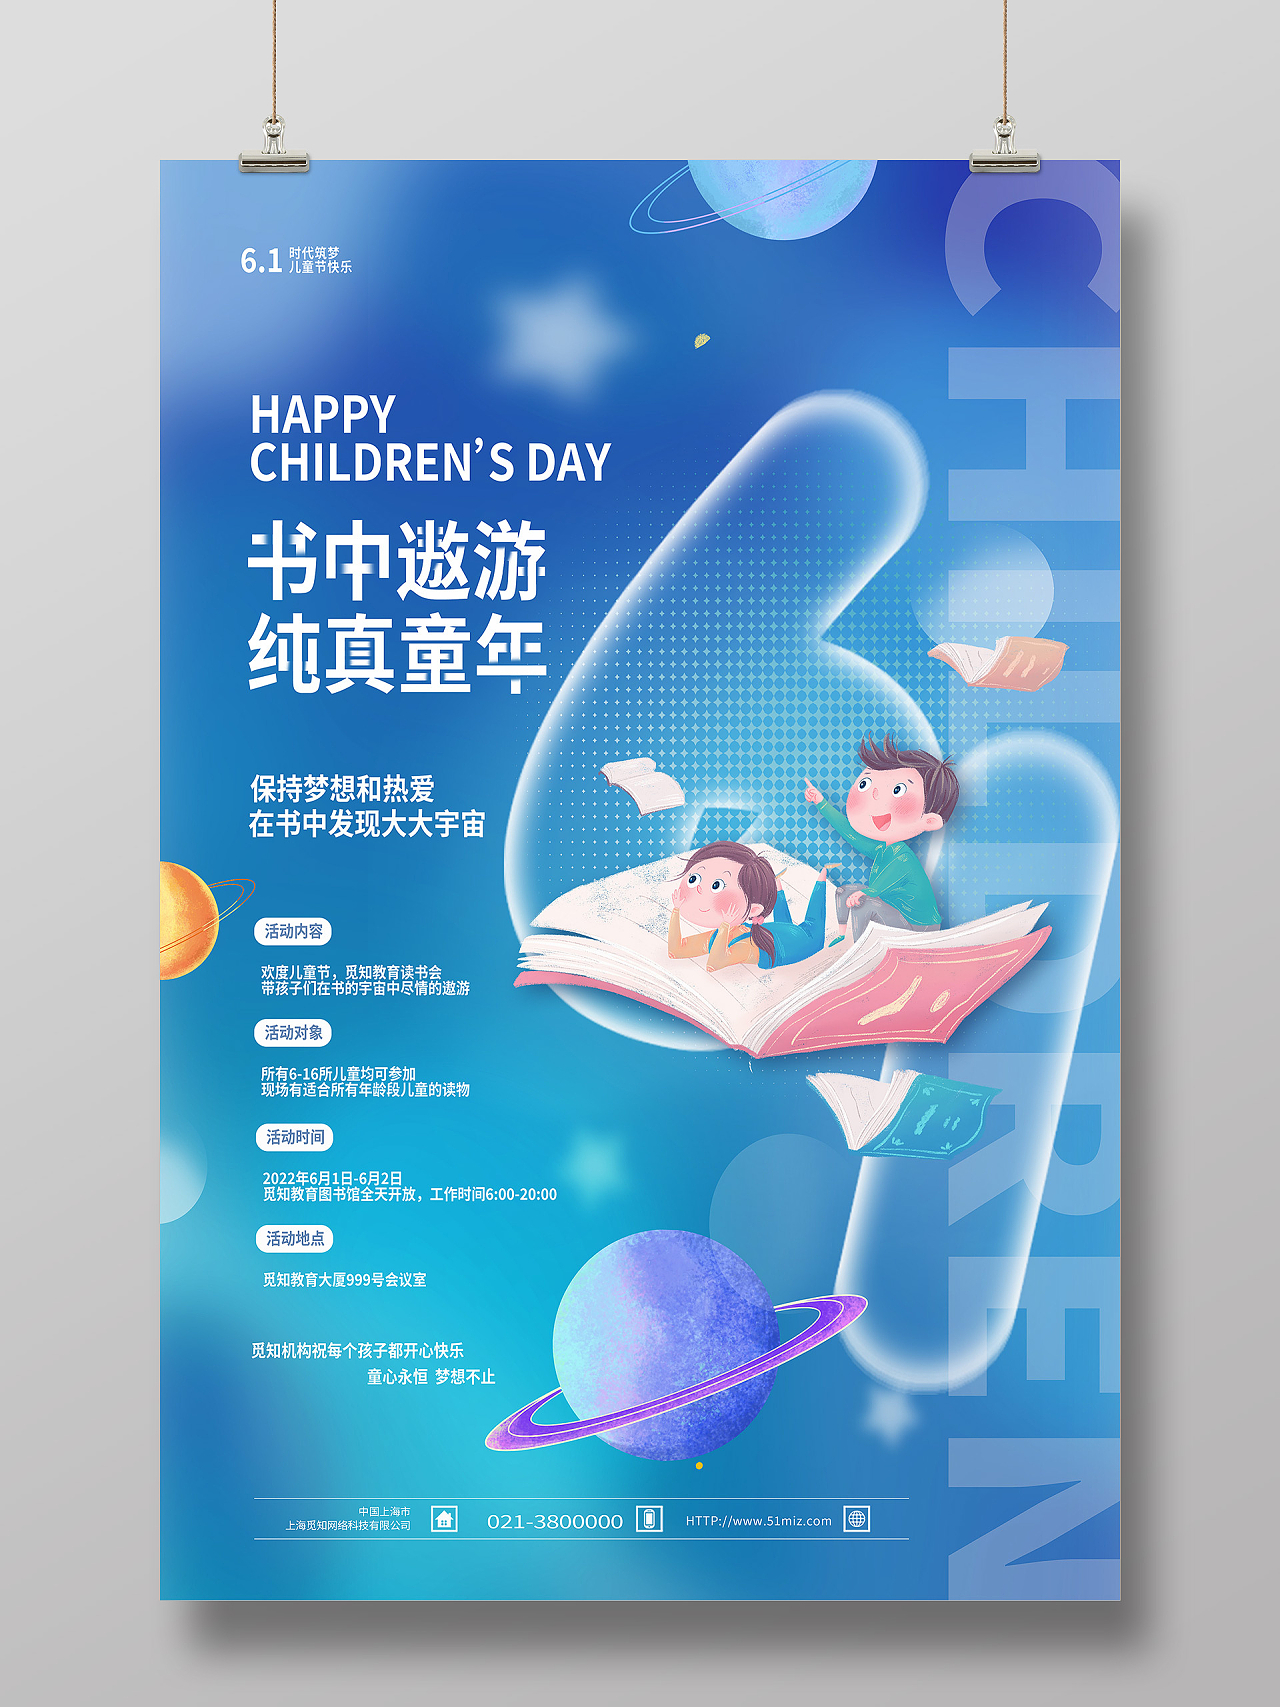 蓝色简约书中遨游纯真童年61儿童节节日海报